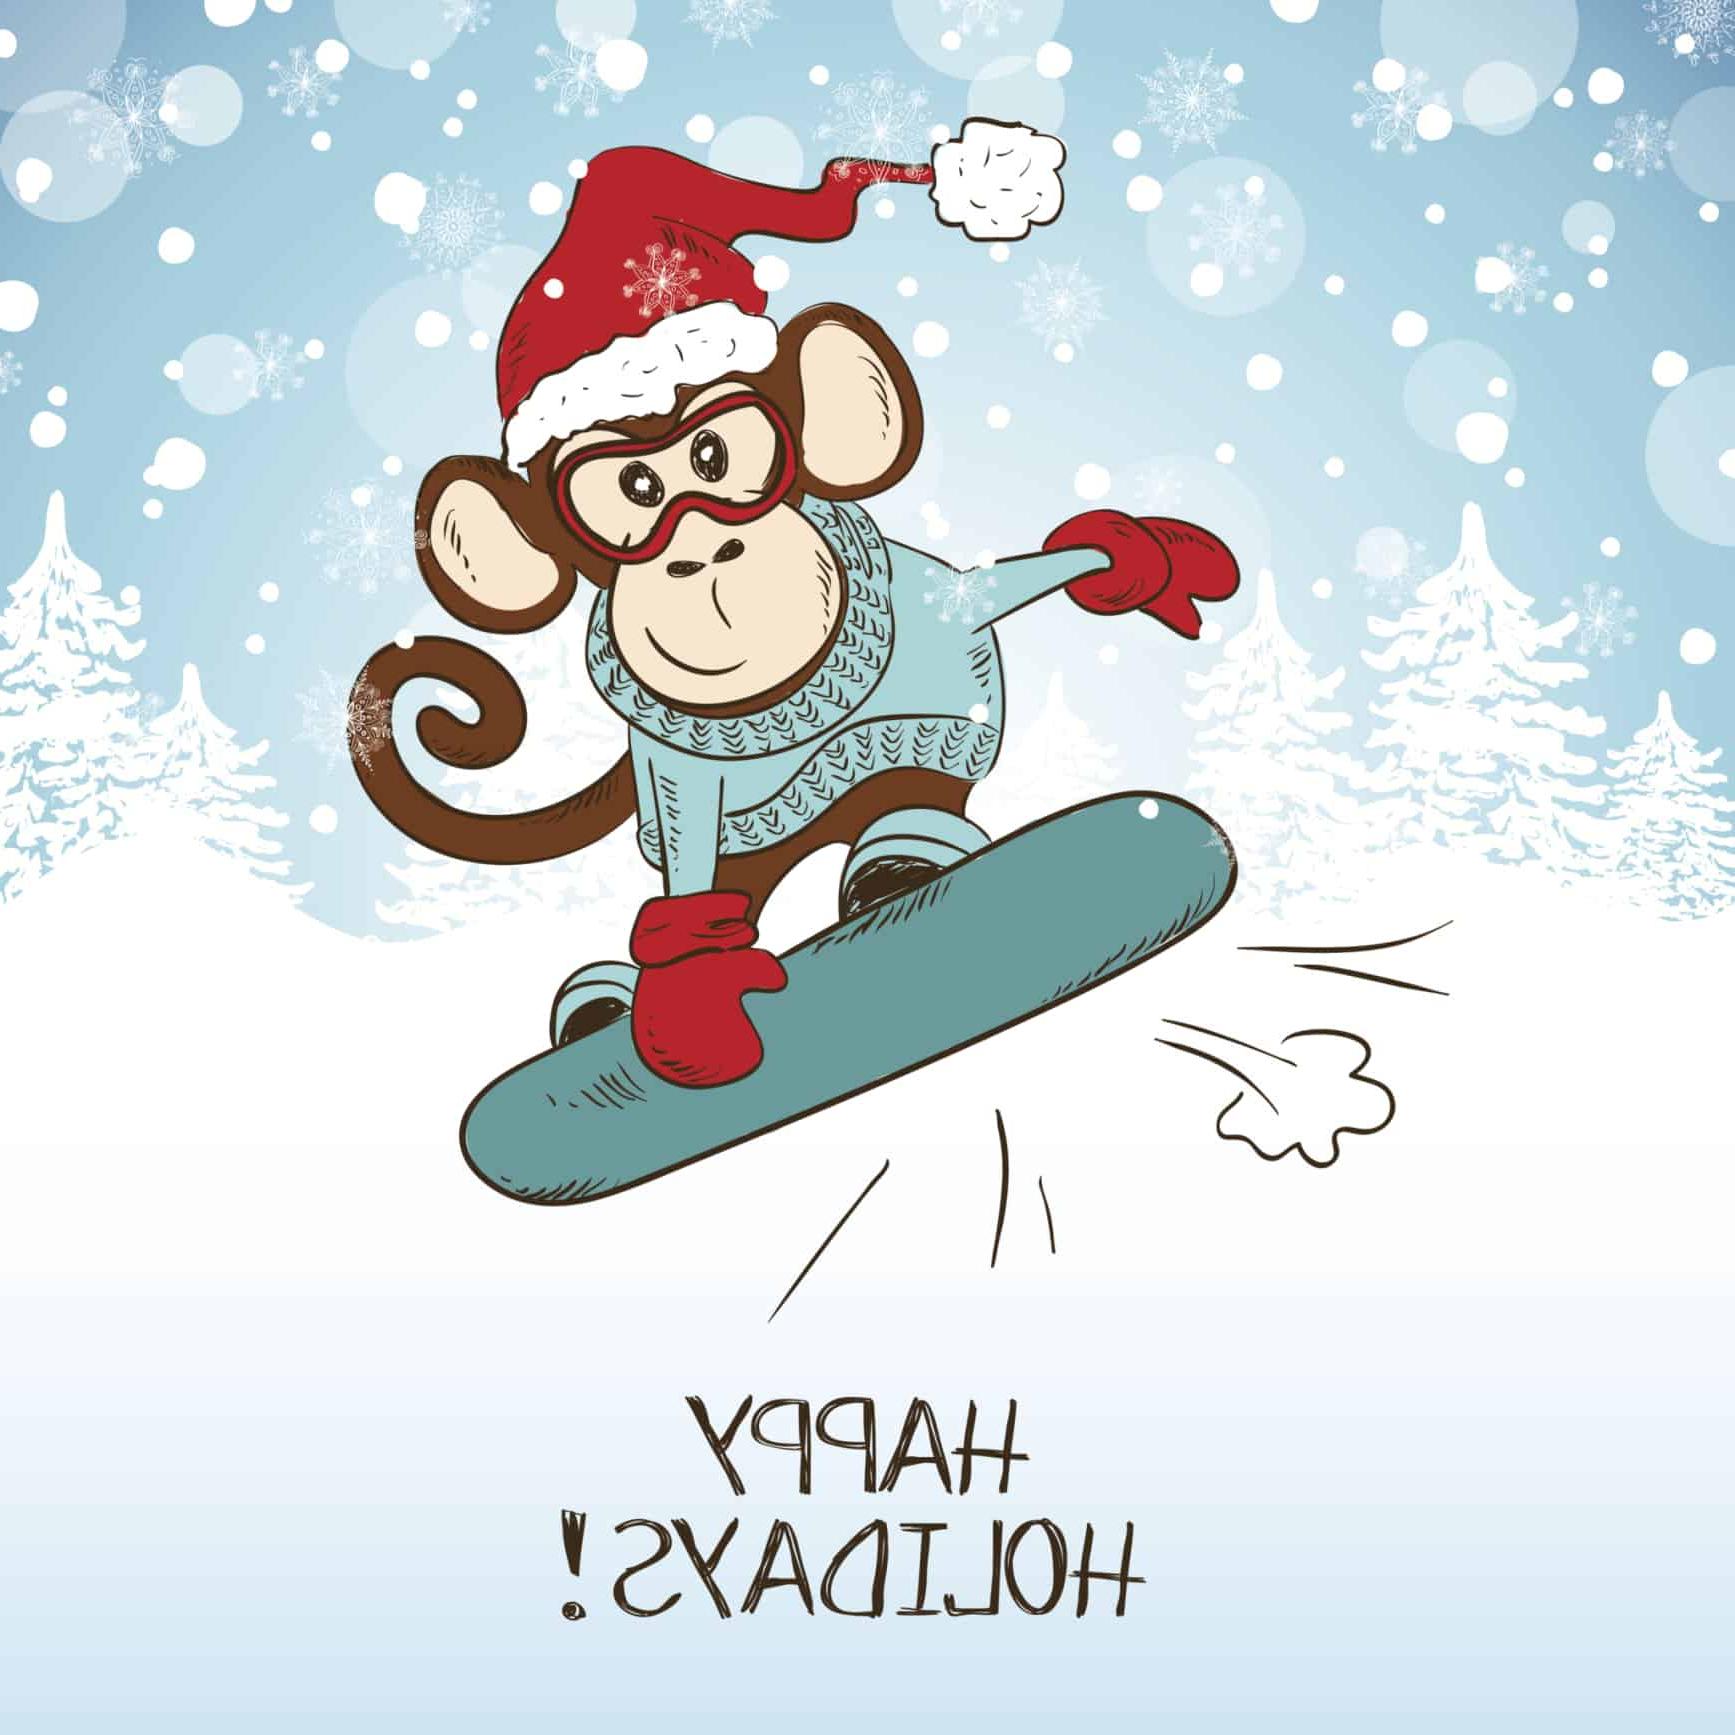 节日快乐! monkey on snowboard